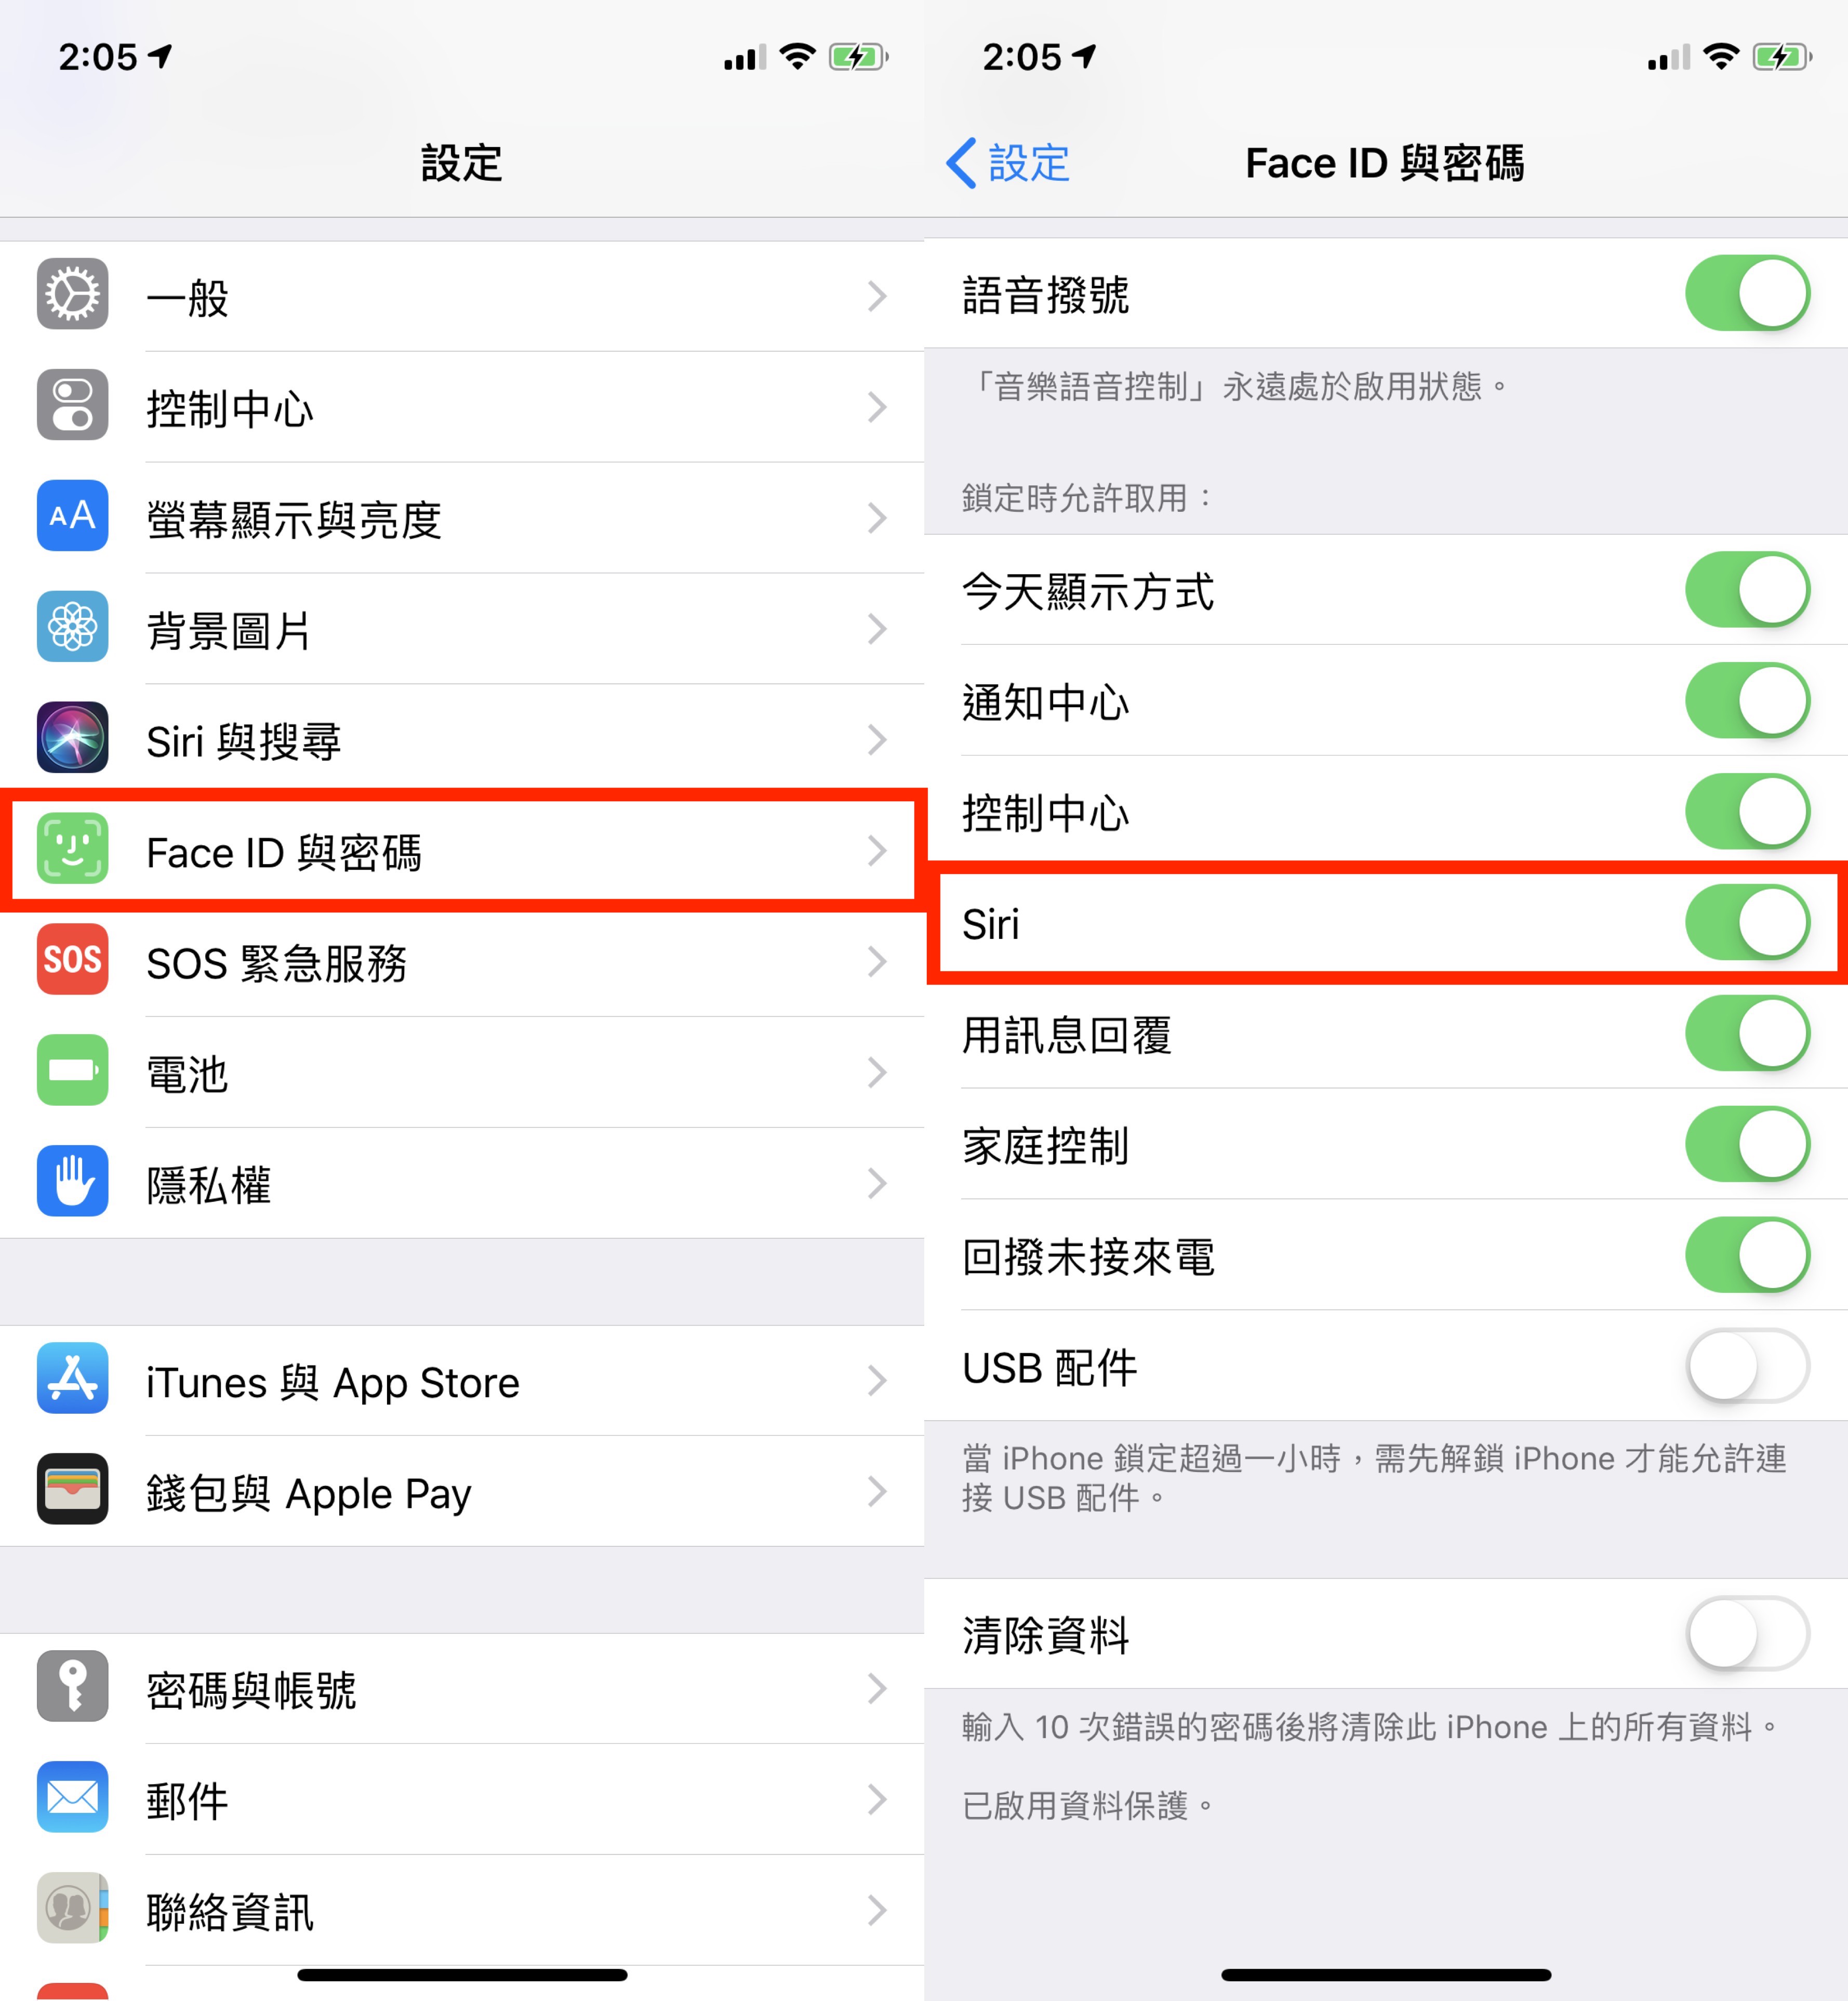 iOS 12.1 Bug、FaceTime 群組通話